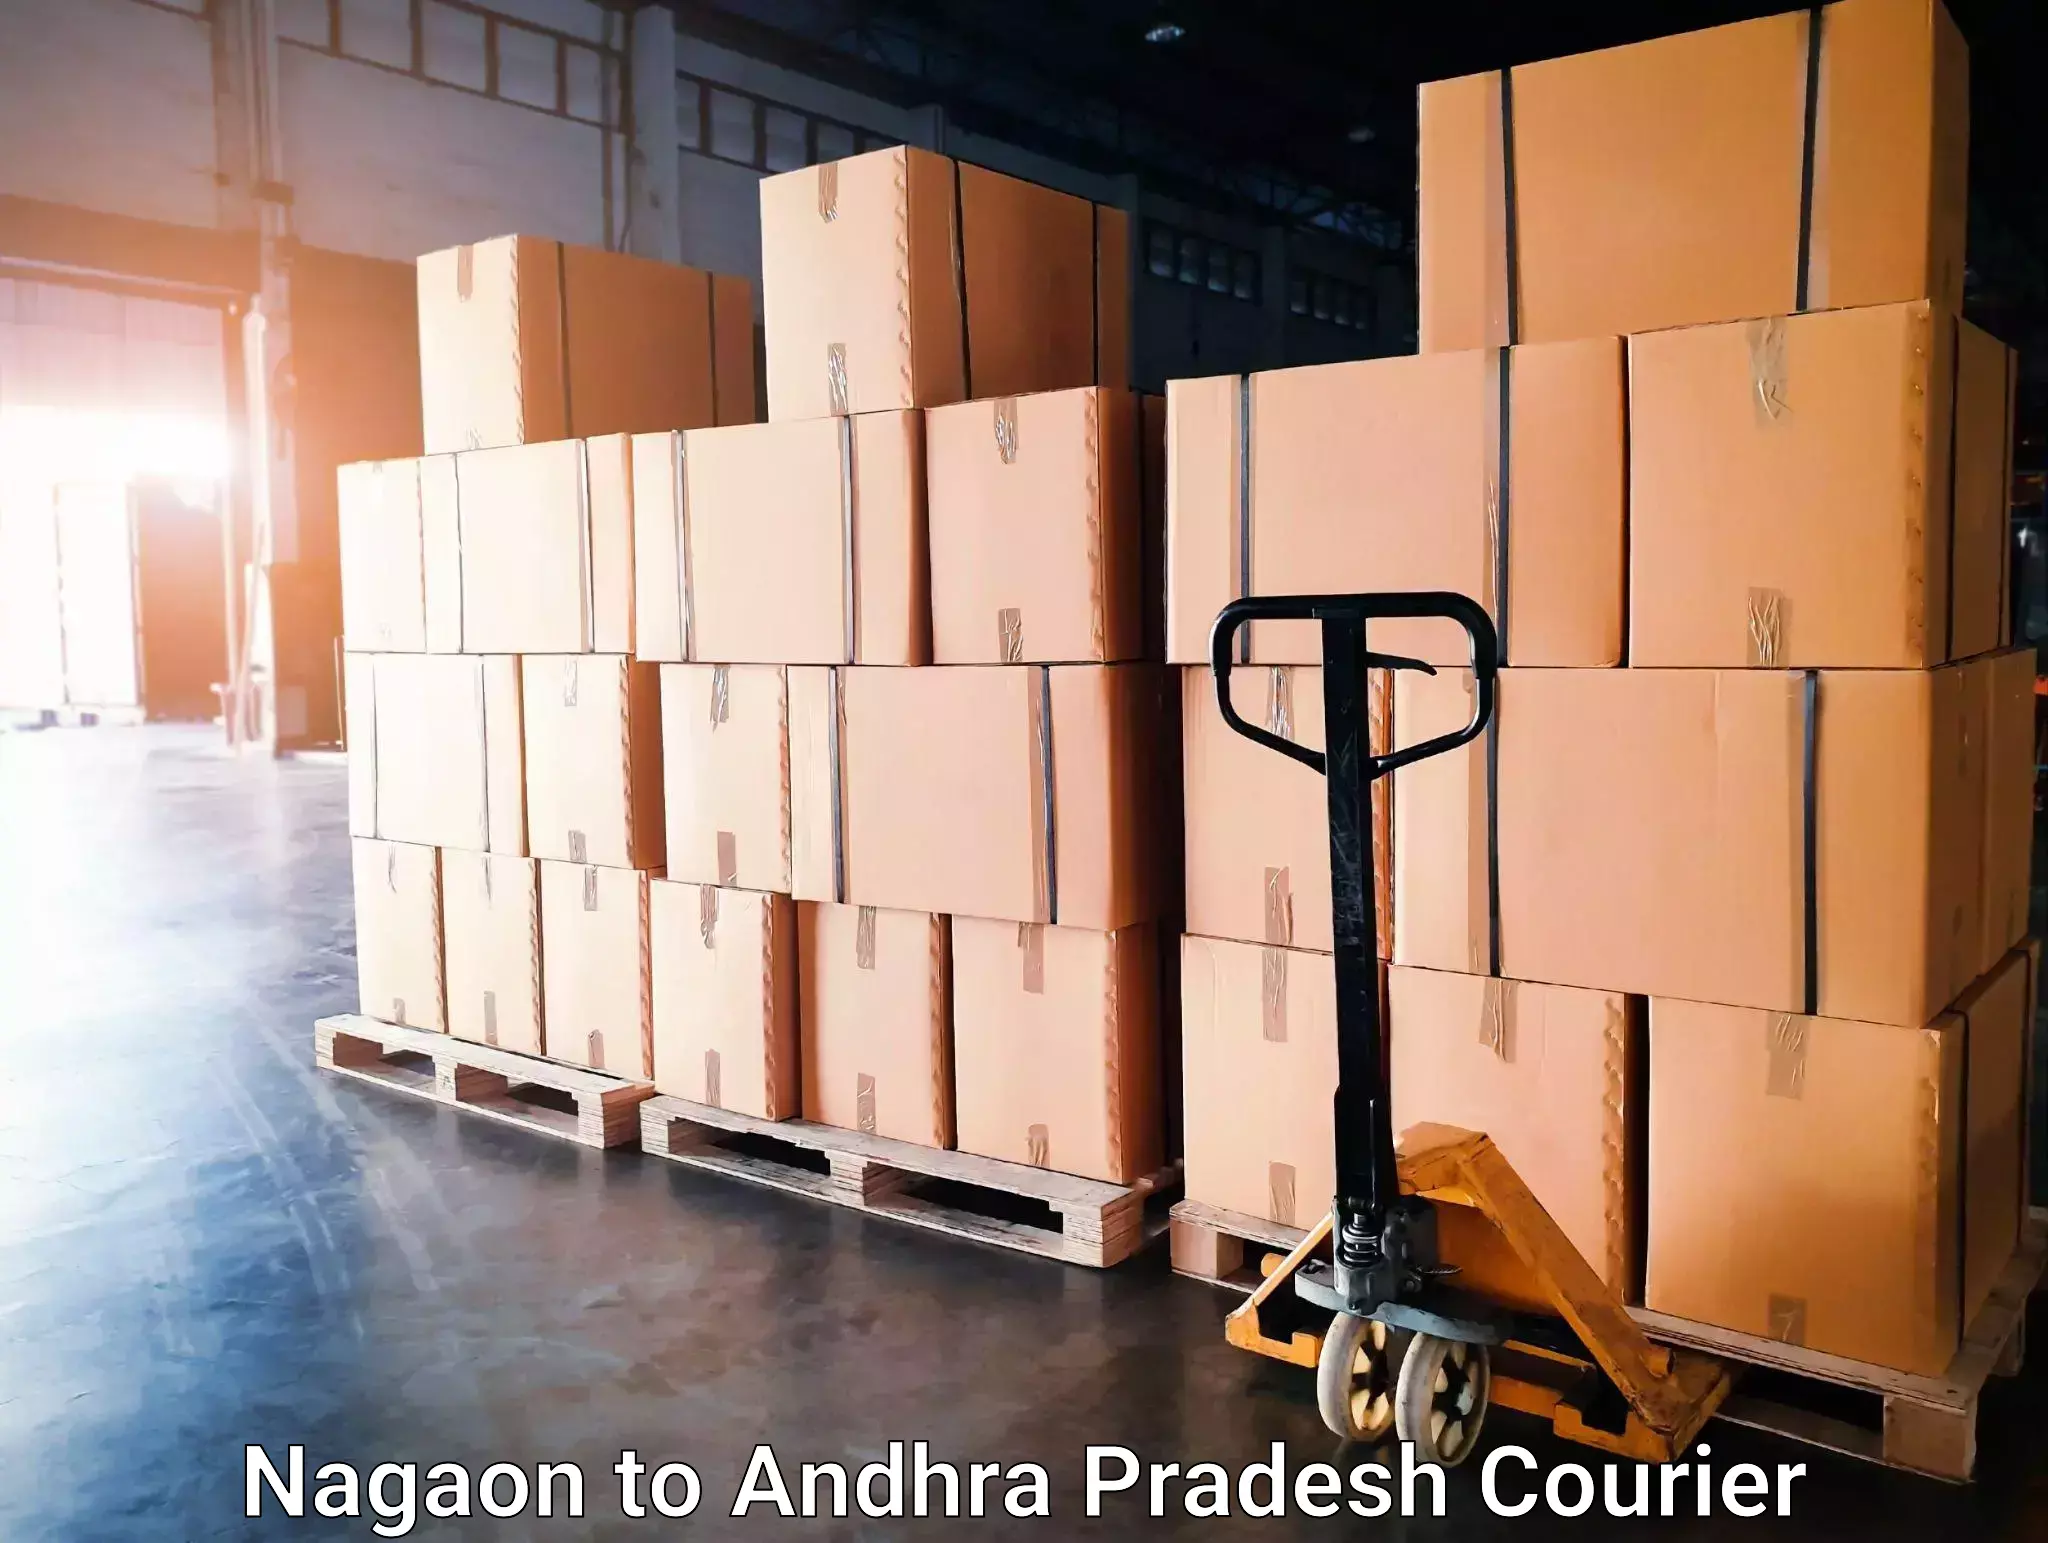 Global shipping networks Nagaon to Andhra Pradesh